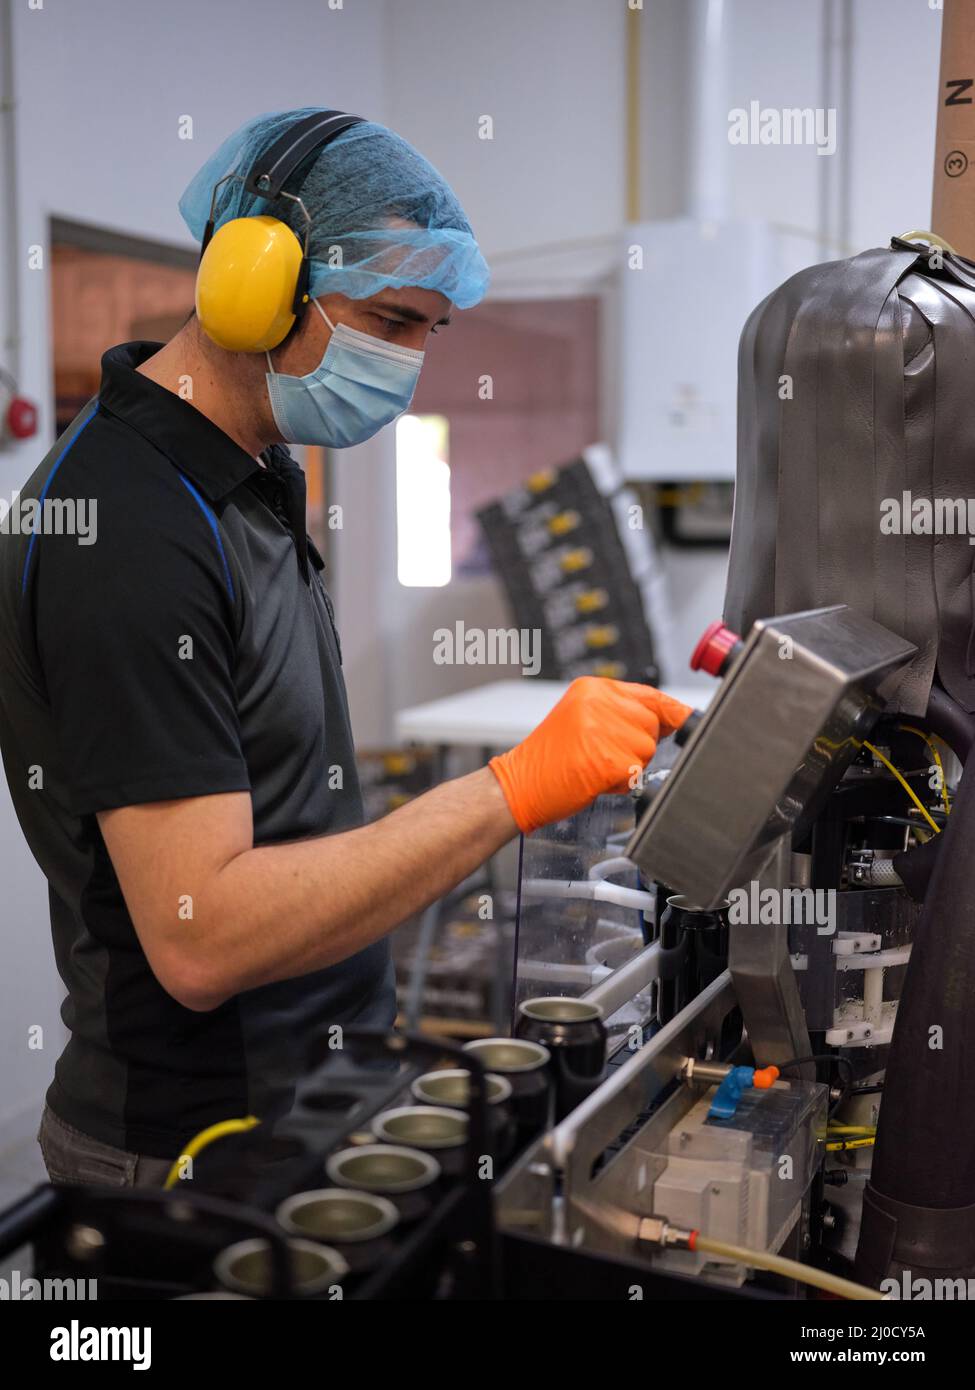 Uomo che lavora con una macchina elettronica per il confezionamento della birra. Foto Stock